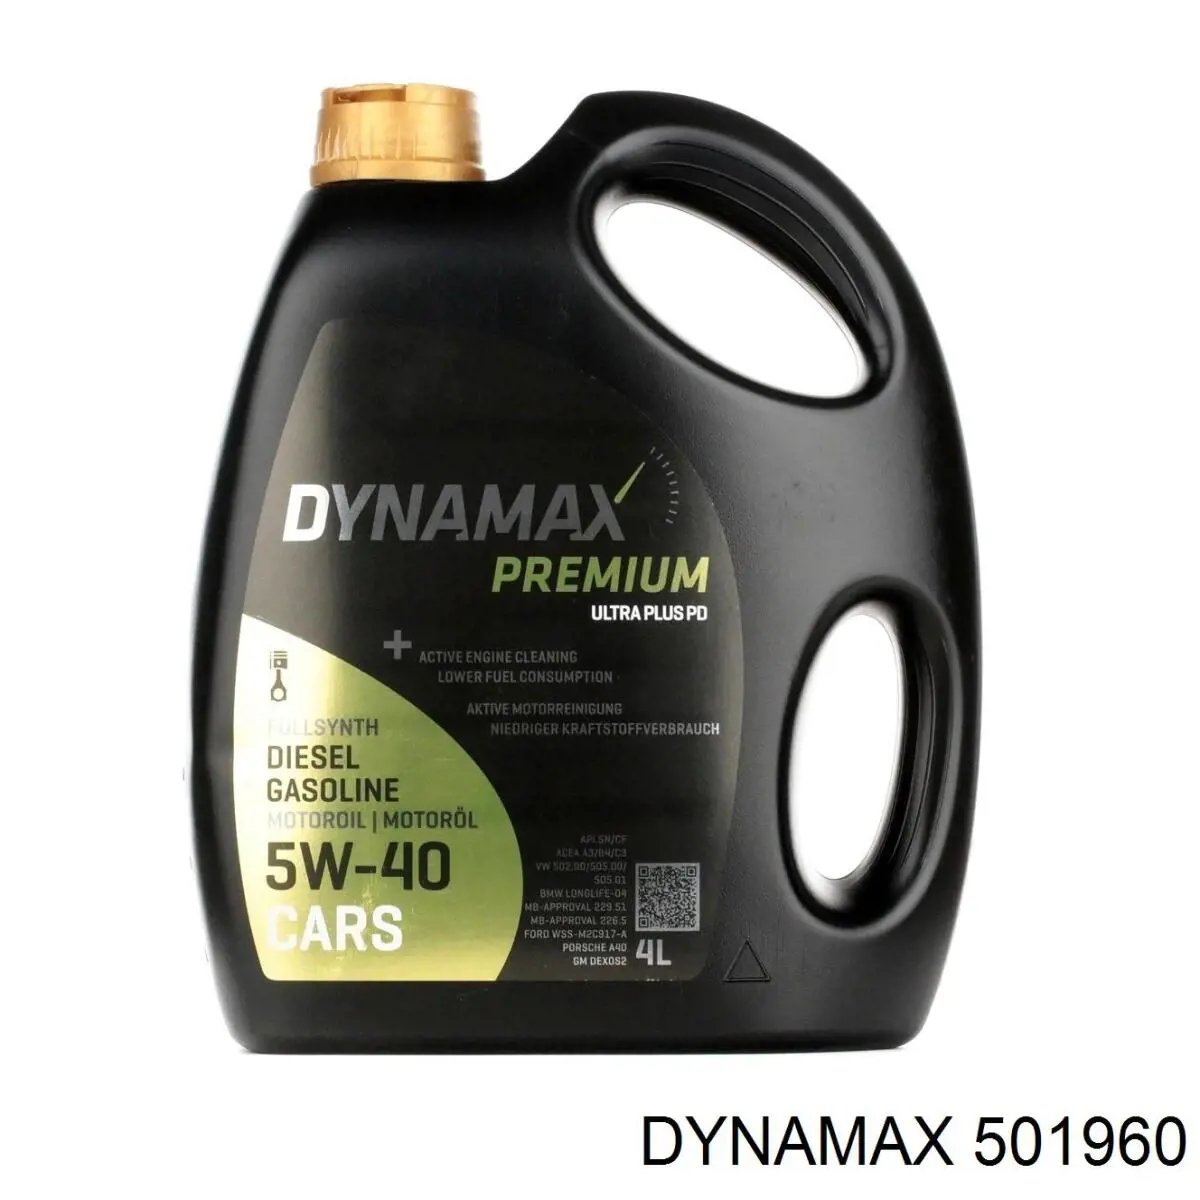 Dynamax (501960)